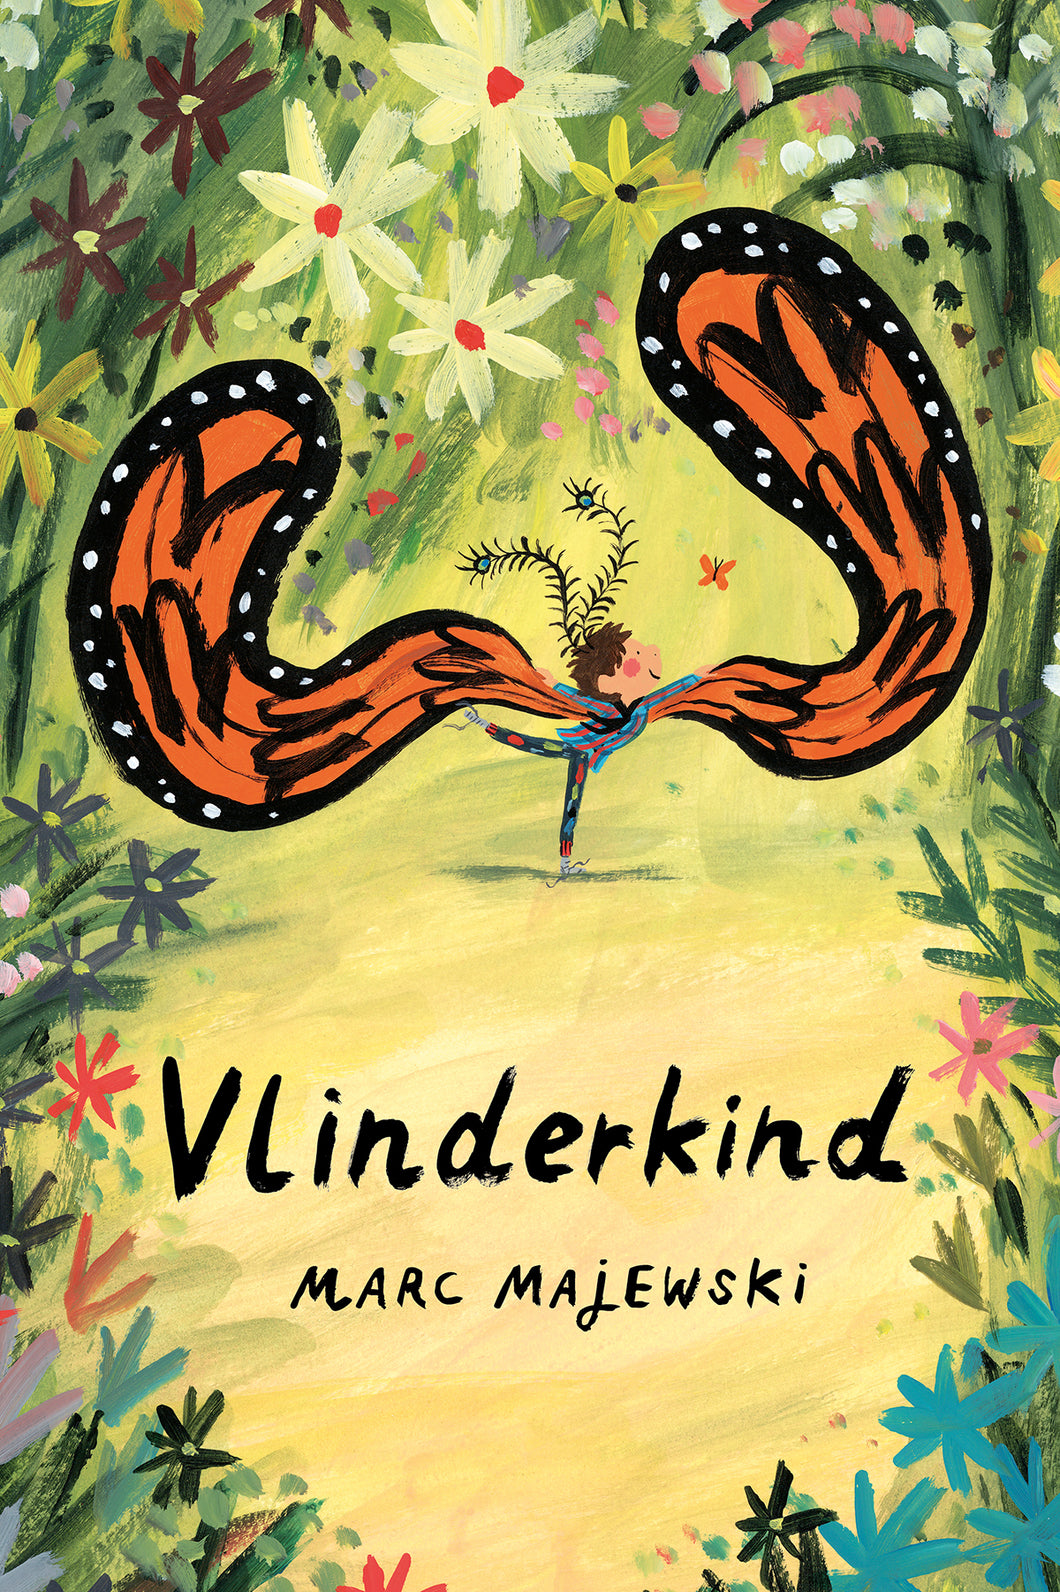 Vlinderkind / Marc Majewski